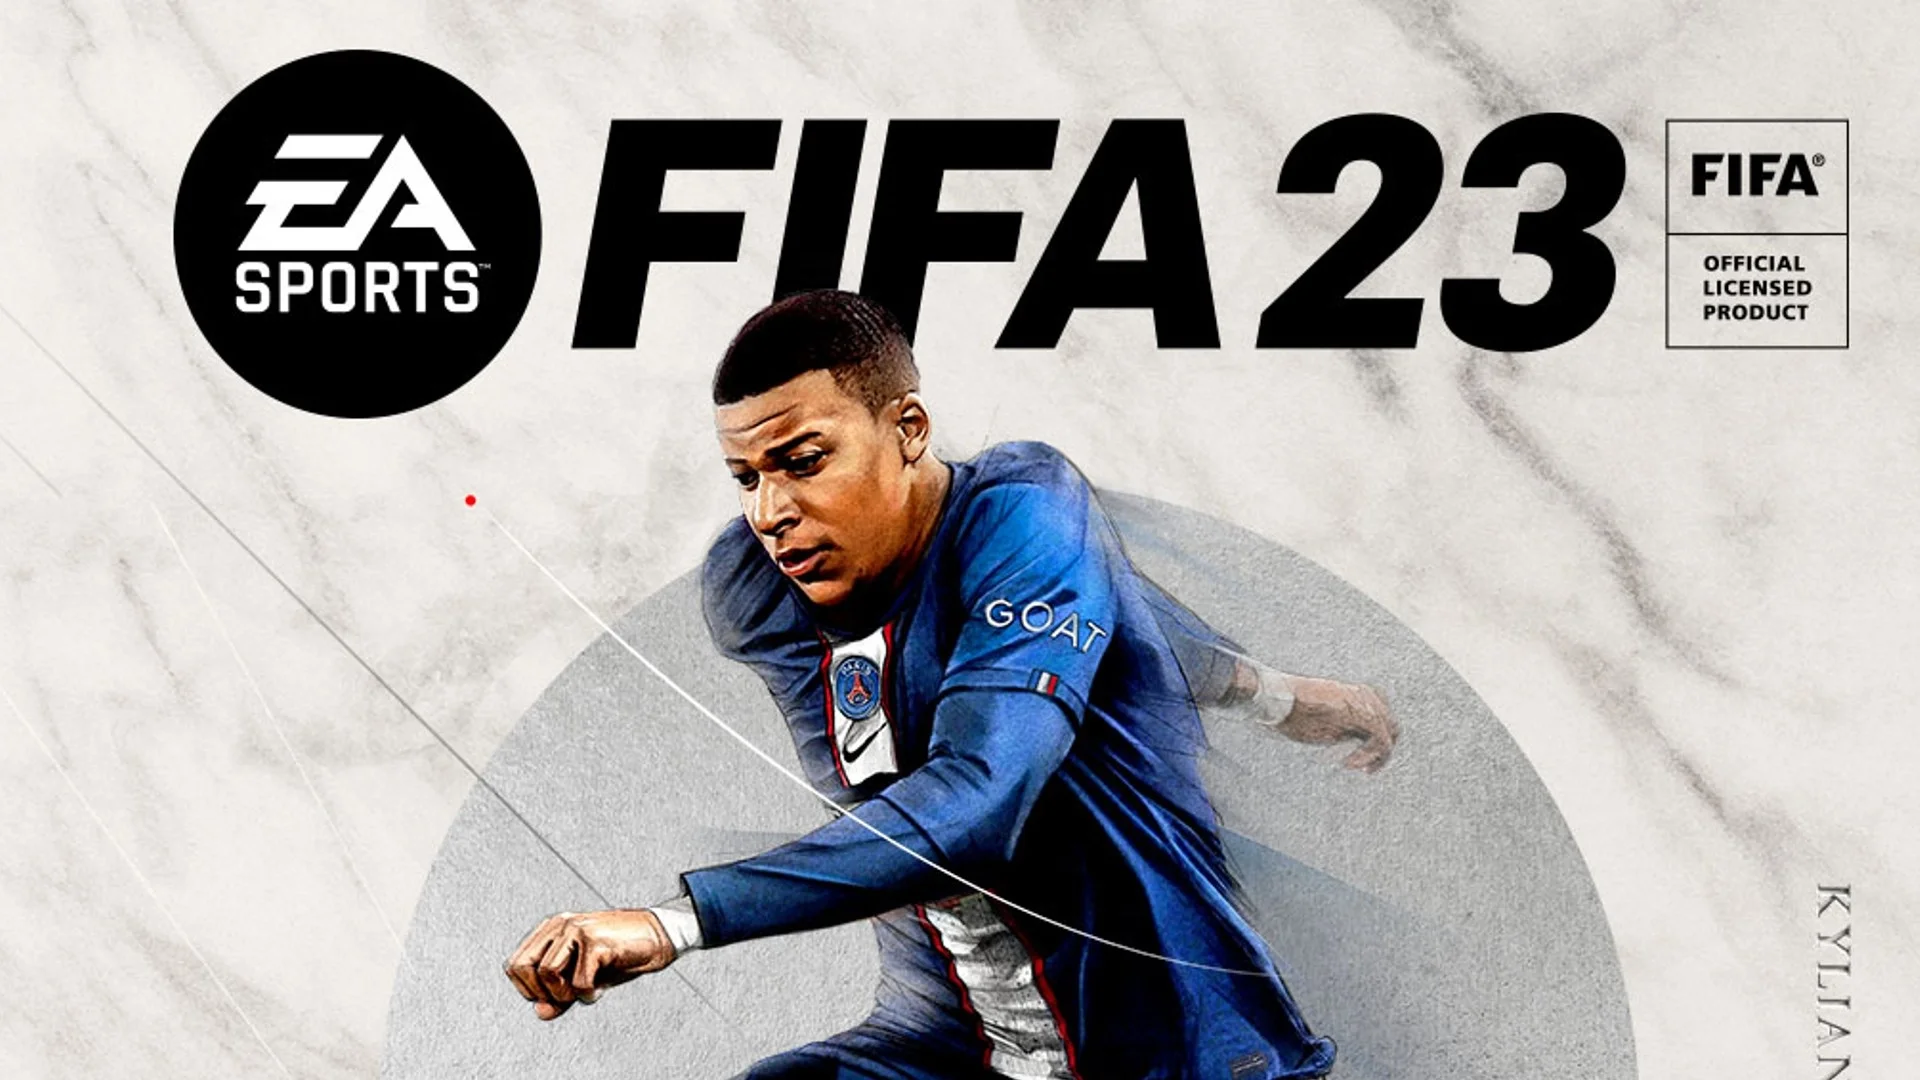 Immagine di FIFA 23 è inarrestabile ed è primo, secondo, terzo, quarto e sesto nella classifica di vendite italiana